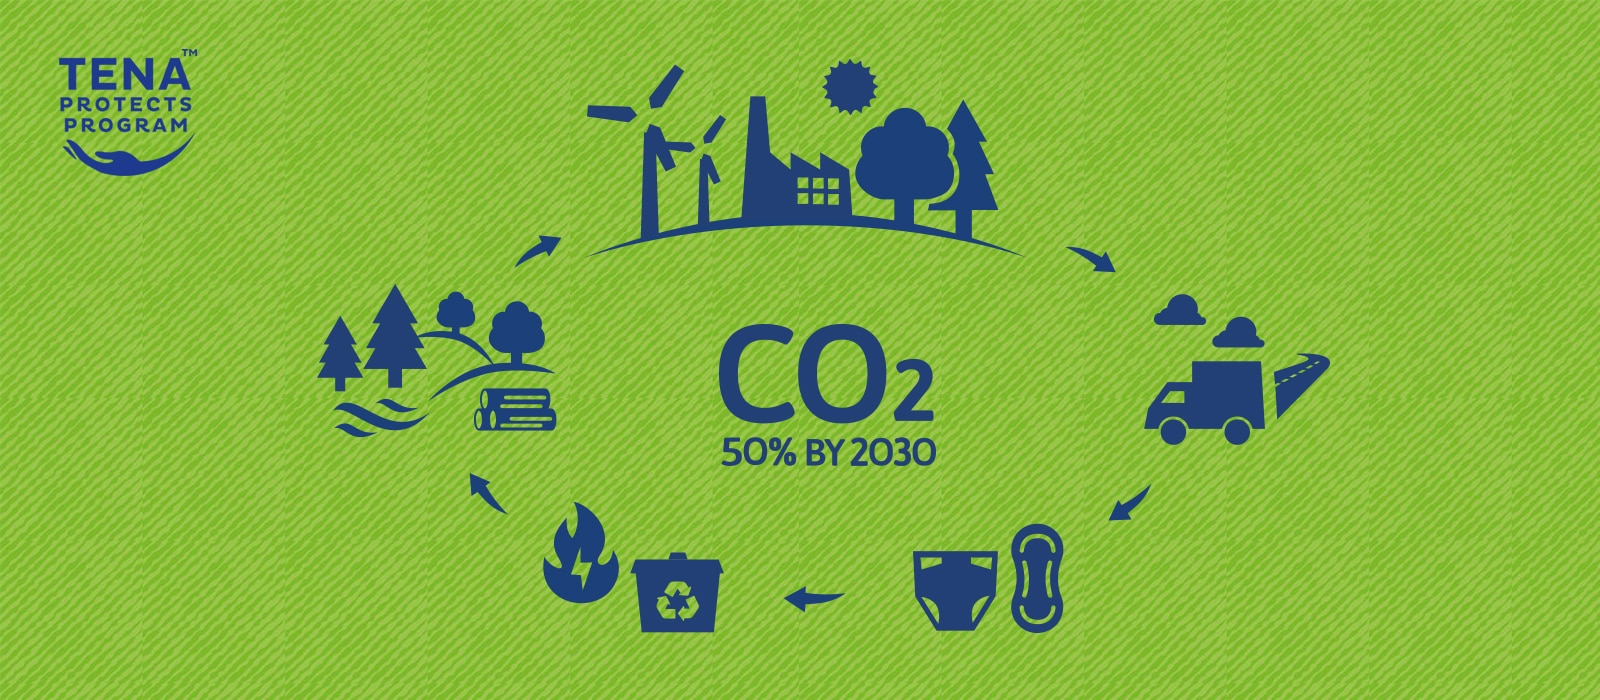 A TENA Protects Program logója mellett a termék-életciklus egyes szakaszit jelképező ikonok veszik körbe a következő szöveget: „CO2 50% by 2030” (CO2-csökkentés 2030-ig). 